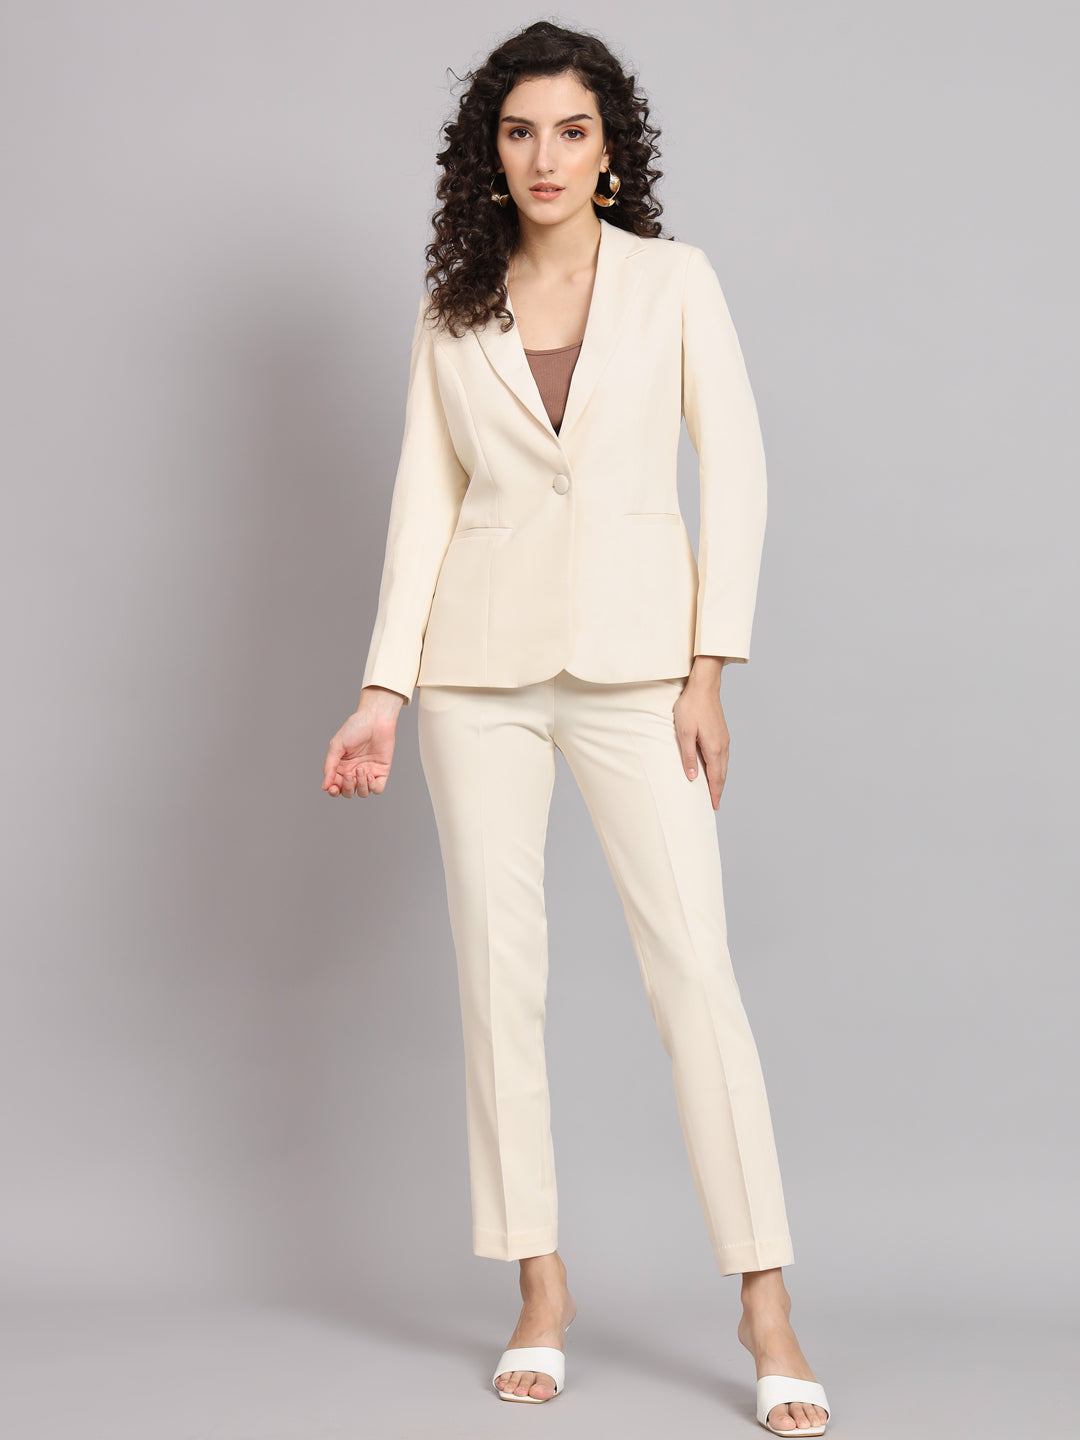 Buy Women Two Piece Suit Setpants Suit, Women Suit, Women Suit Set, Formal  White Suit, Pants Women, Wedding Suit, Prom Suit, Suit Online in India 